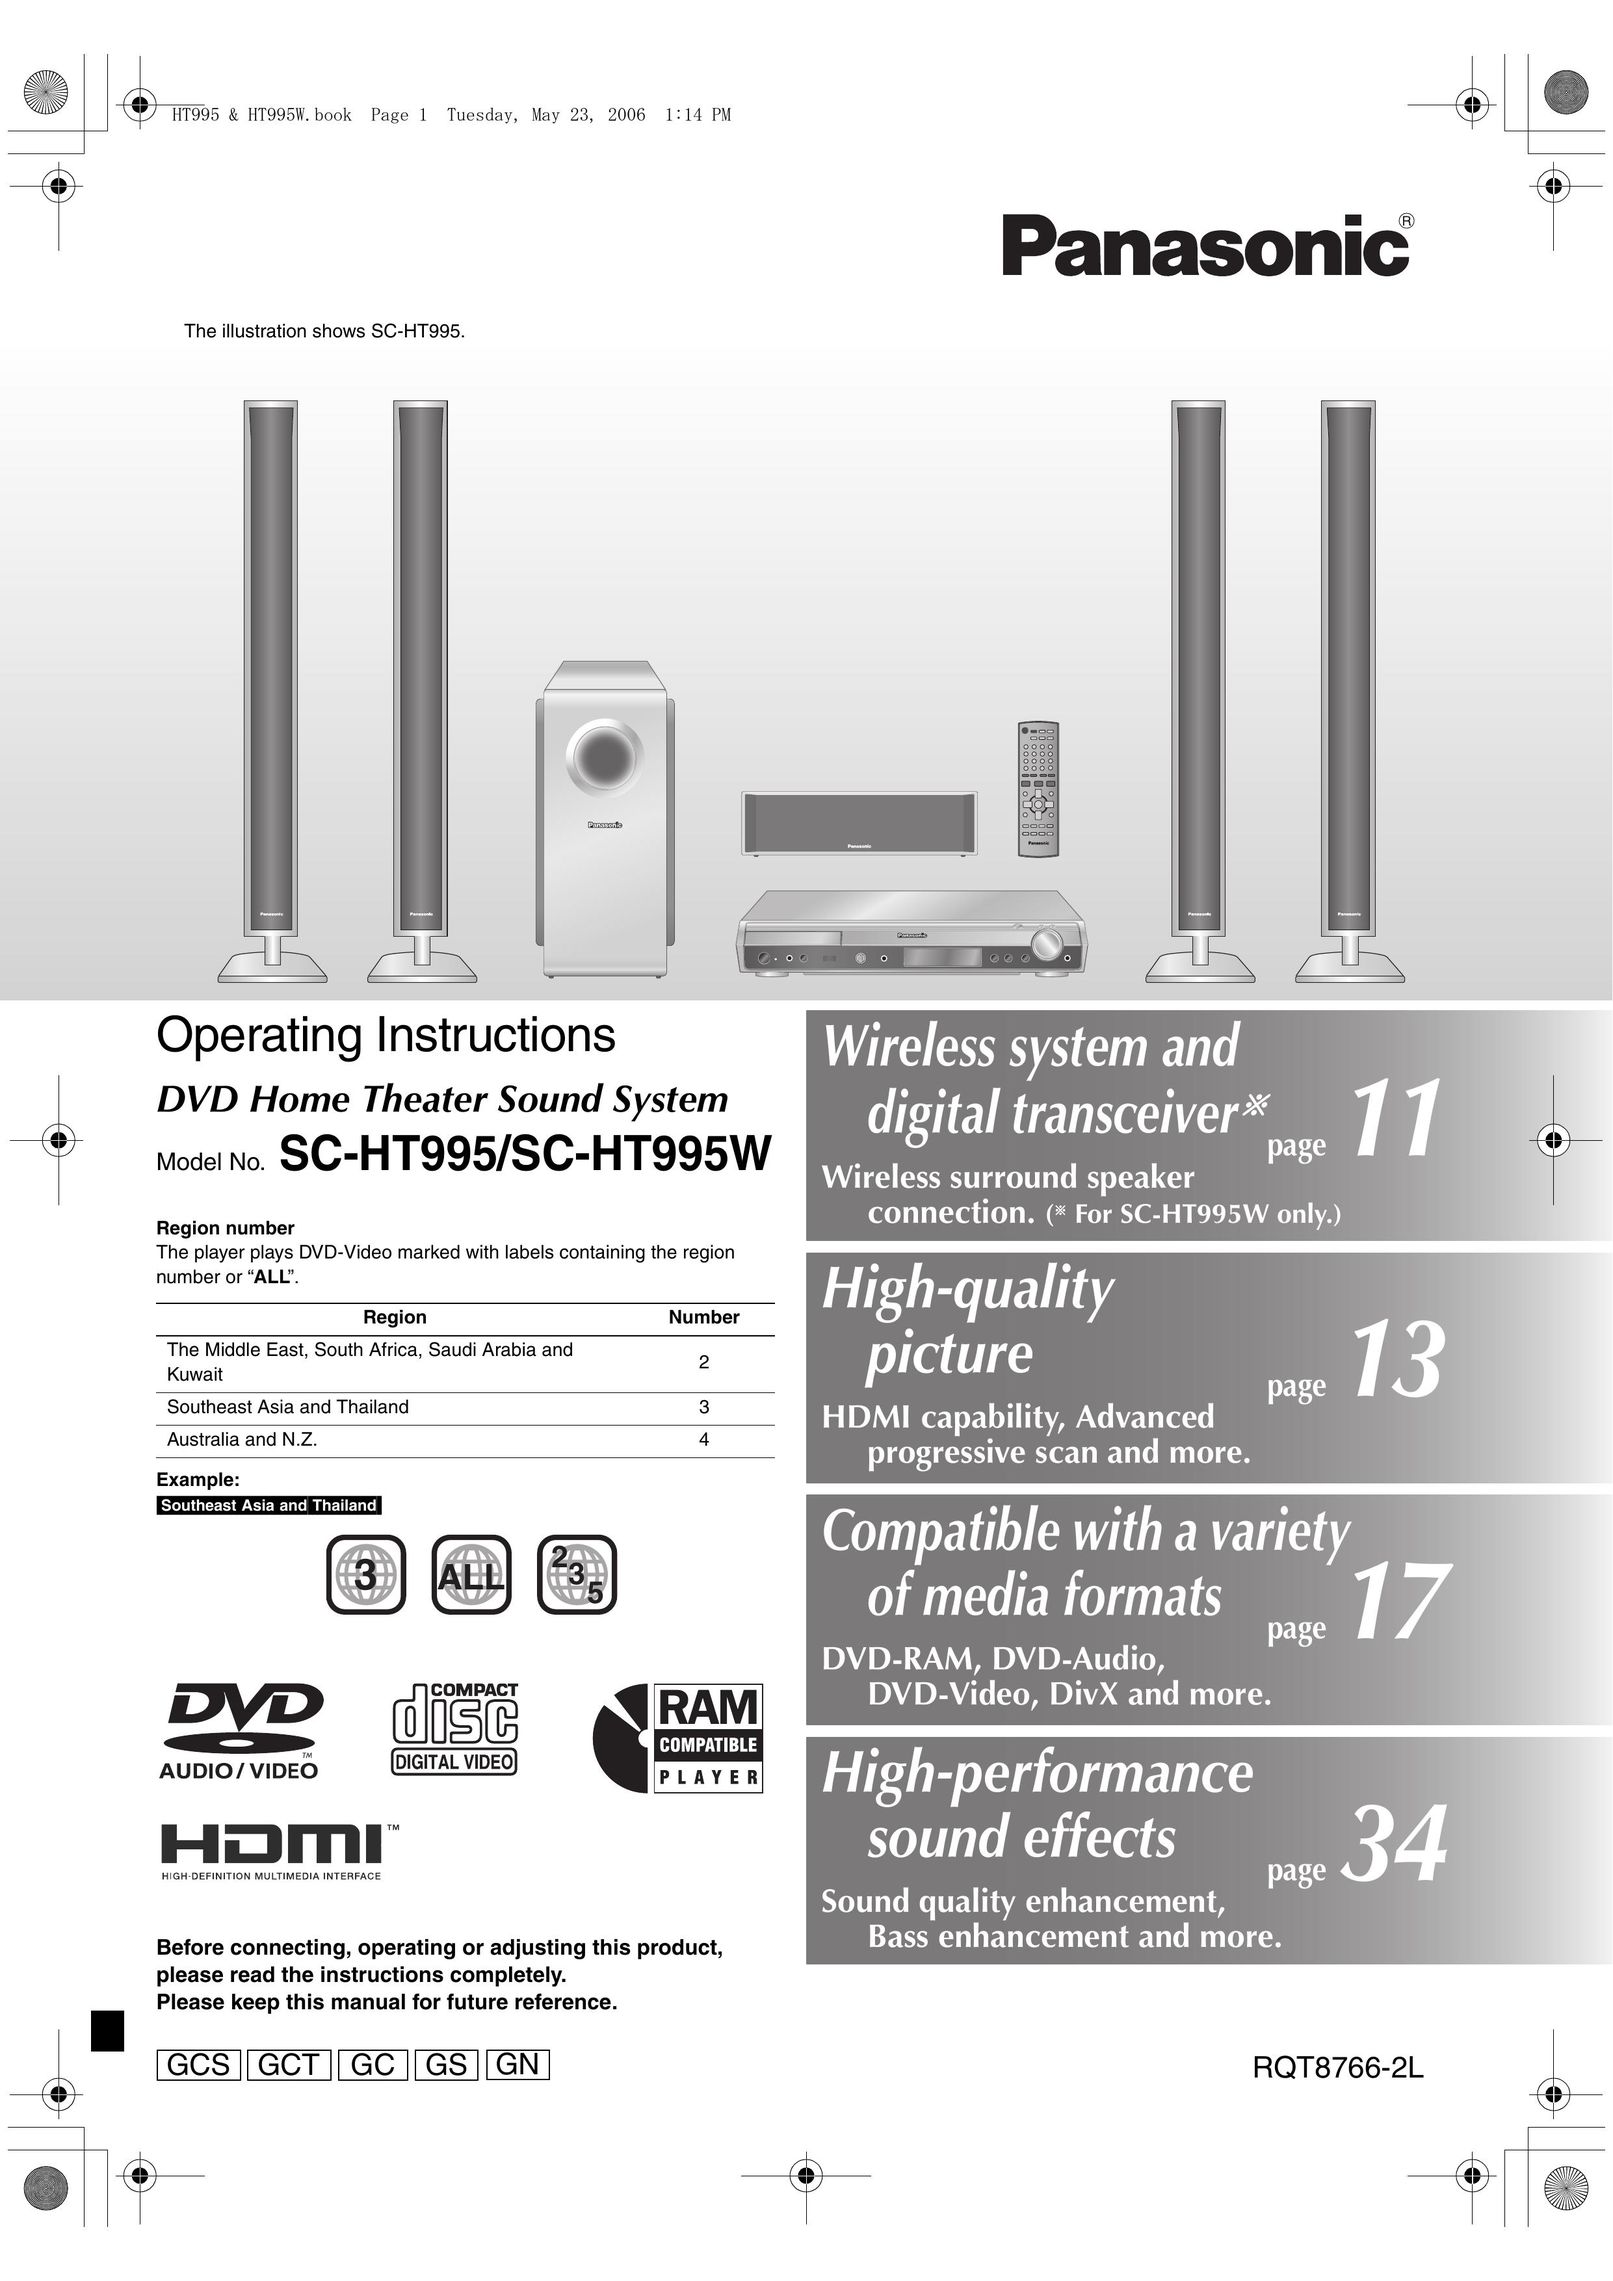 Panasonic SC-HT995 Speaker System User Manual